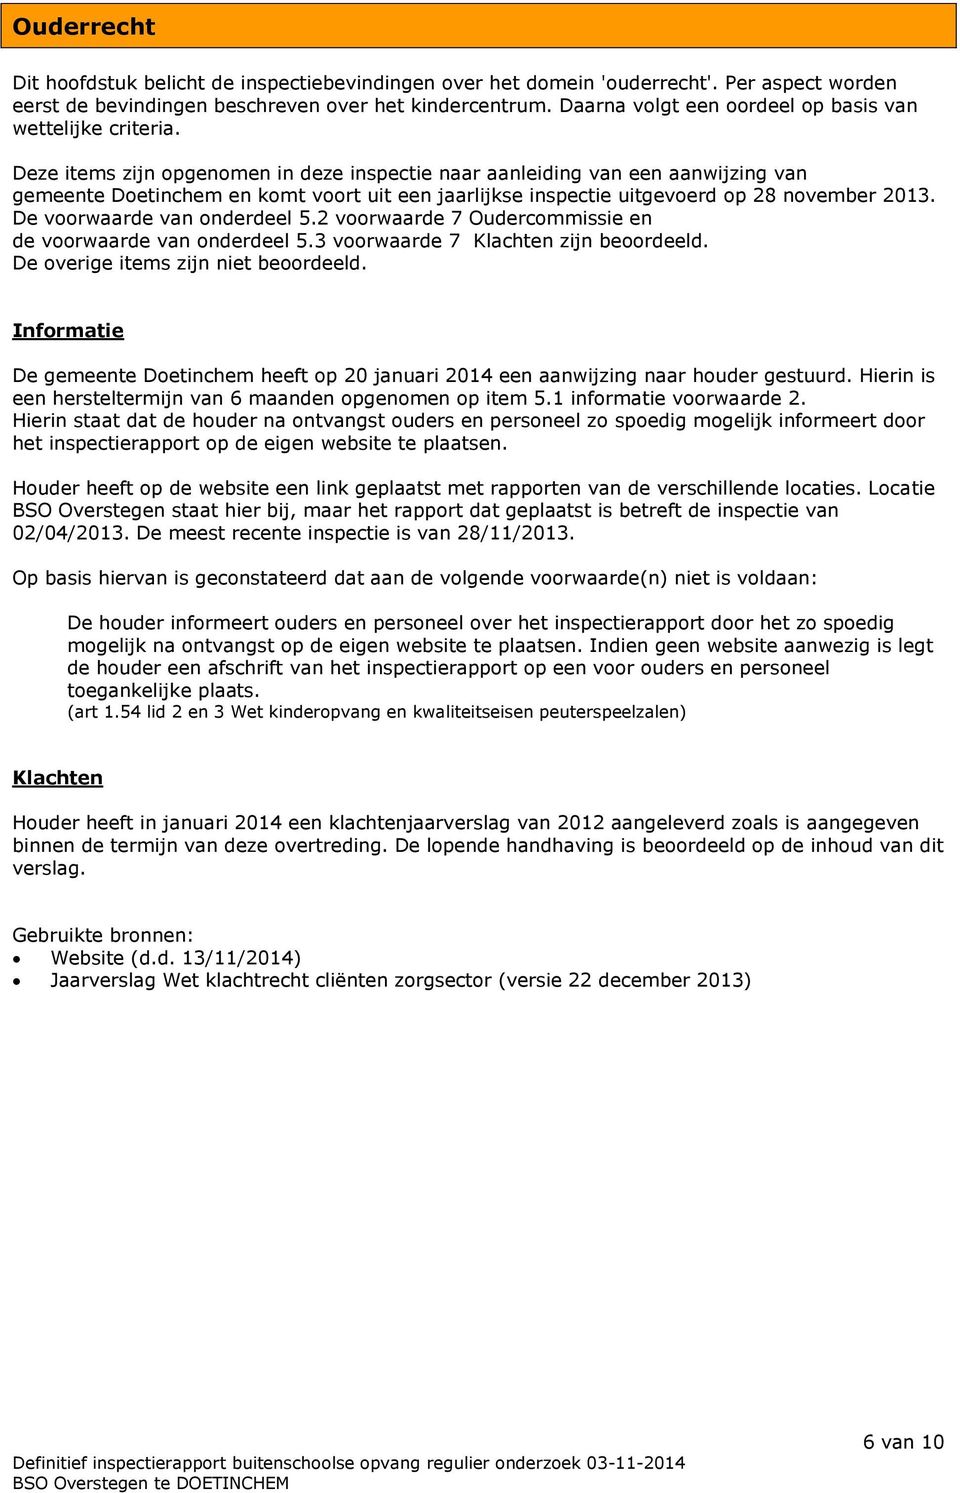 Deze items zijn opgenomen in deze inspectie naar aanleiding van een aanwijzing van gemeente Doetinchem en komt voort uit een jaarlijkse inspectie uitgevoerd op 28 november 2013.